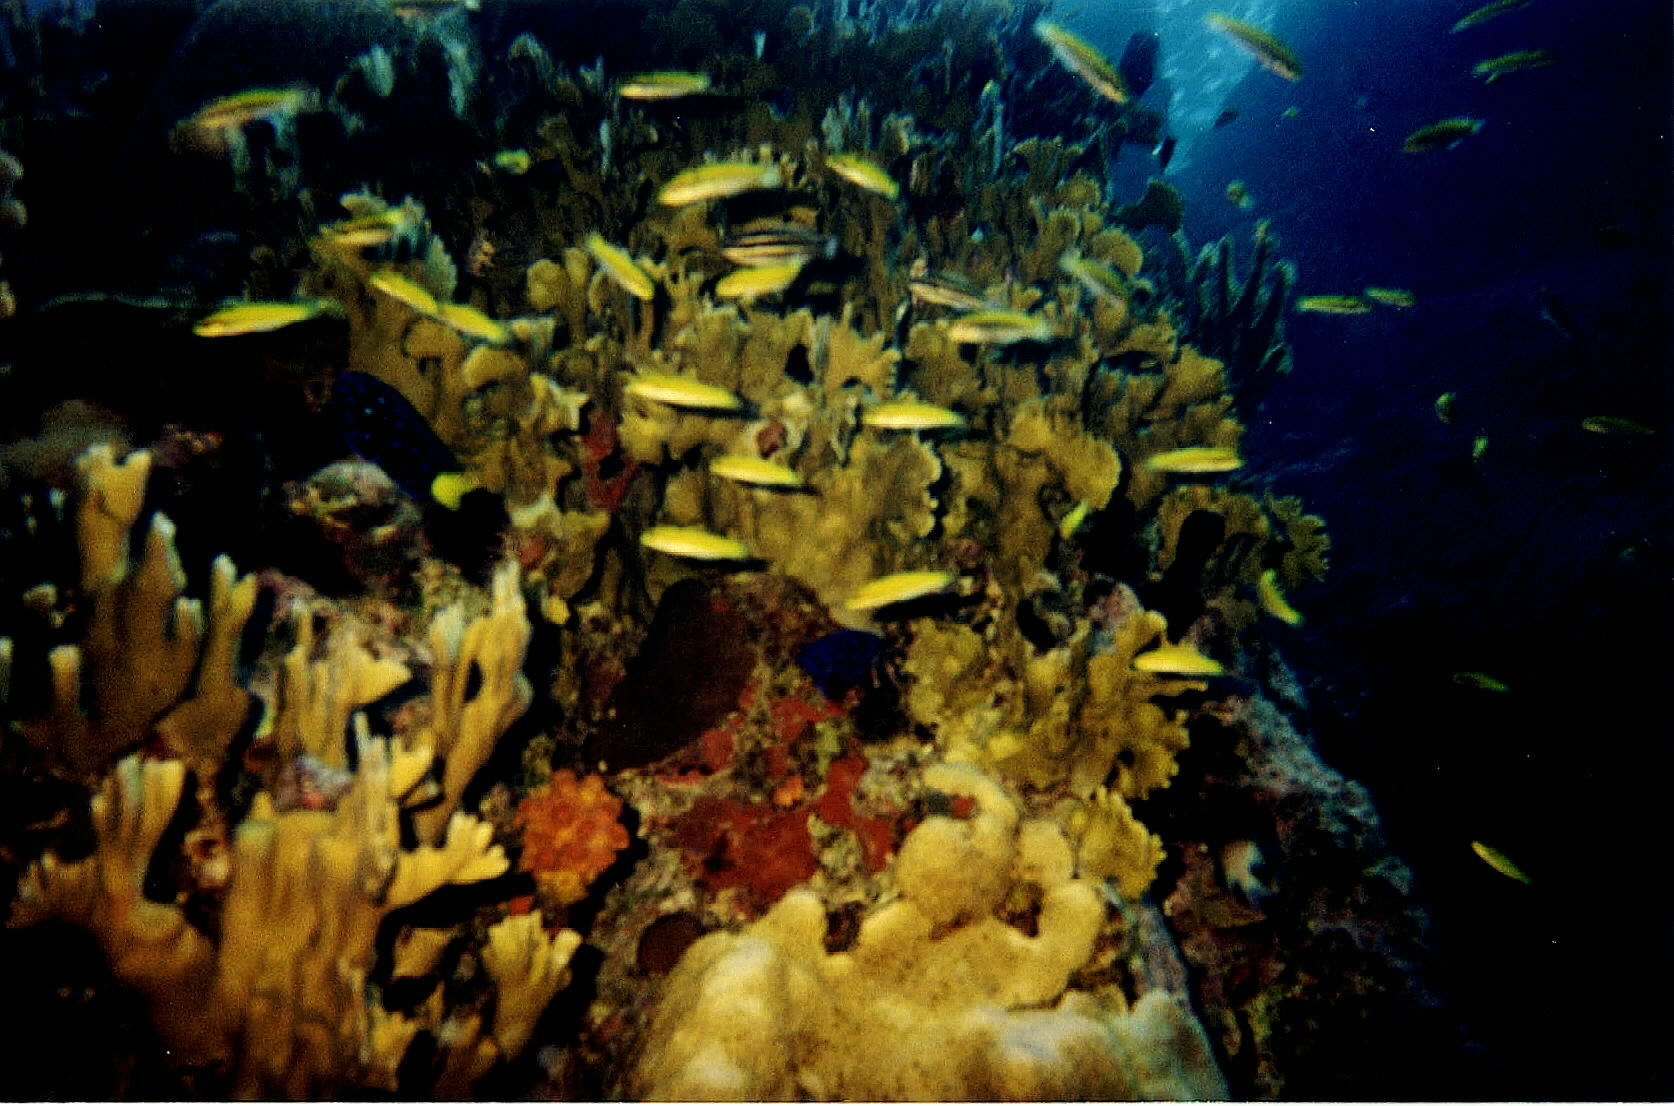 Underwater BVI scenery